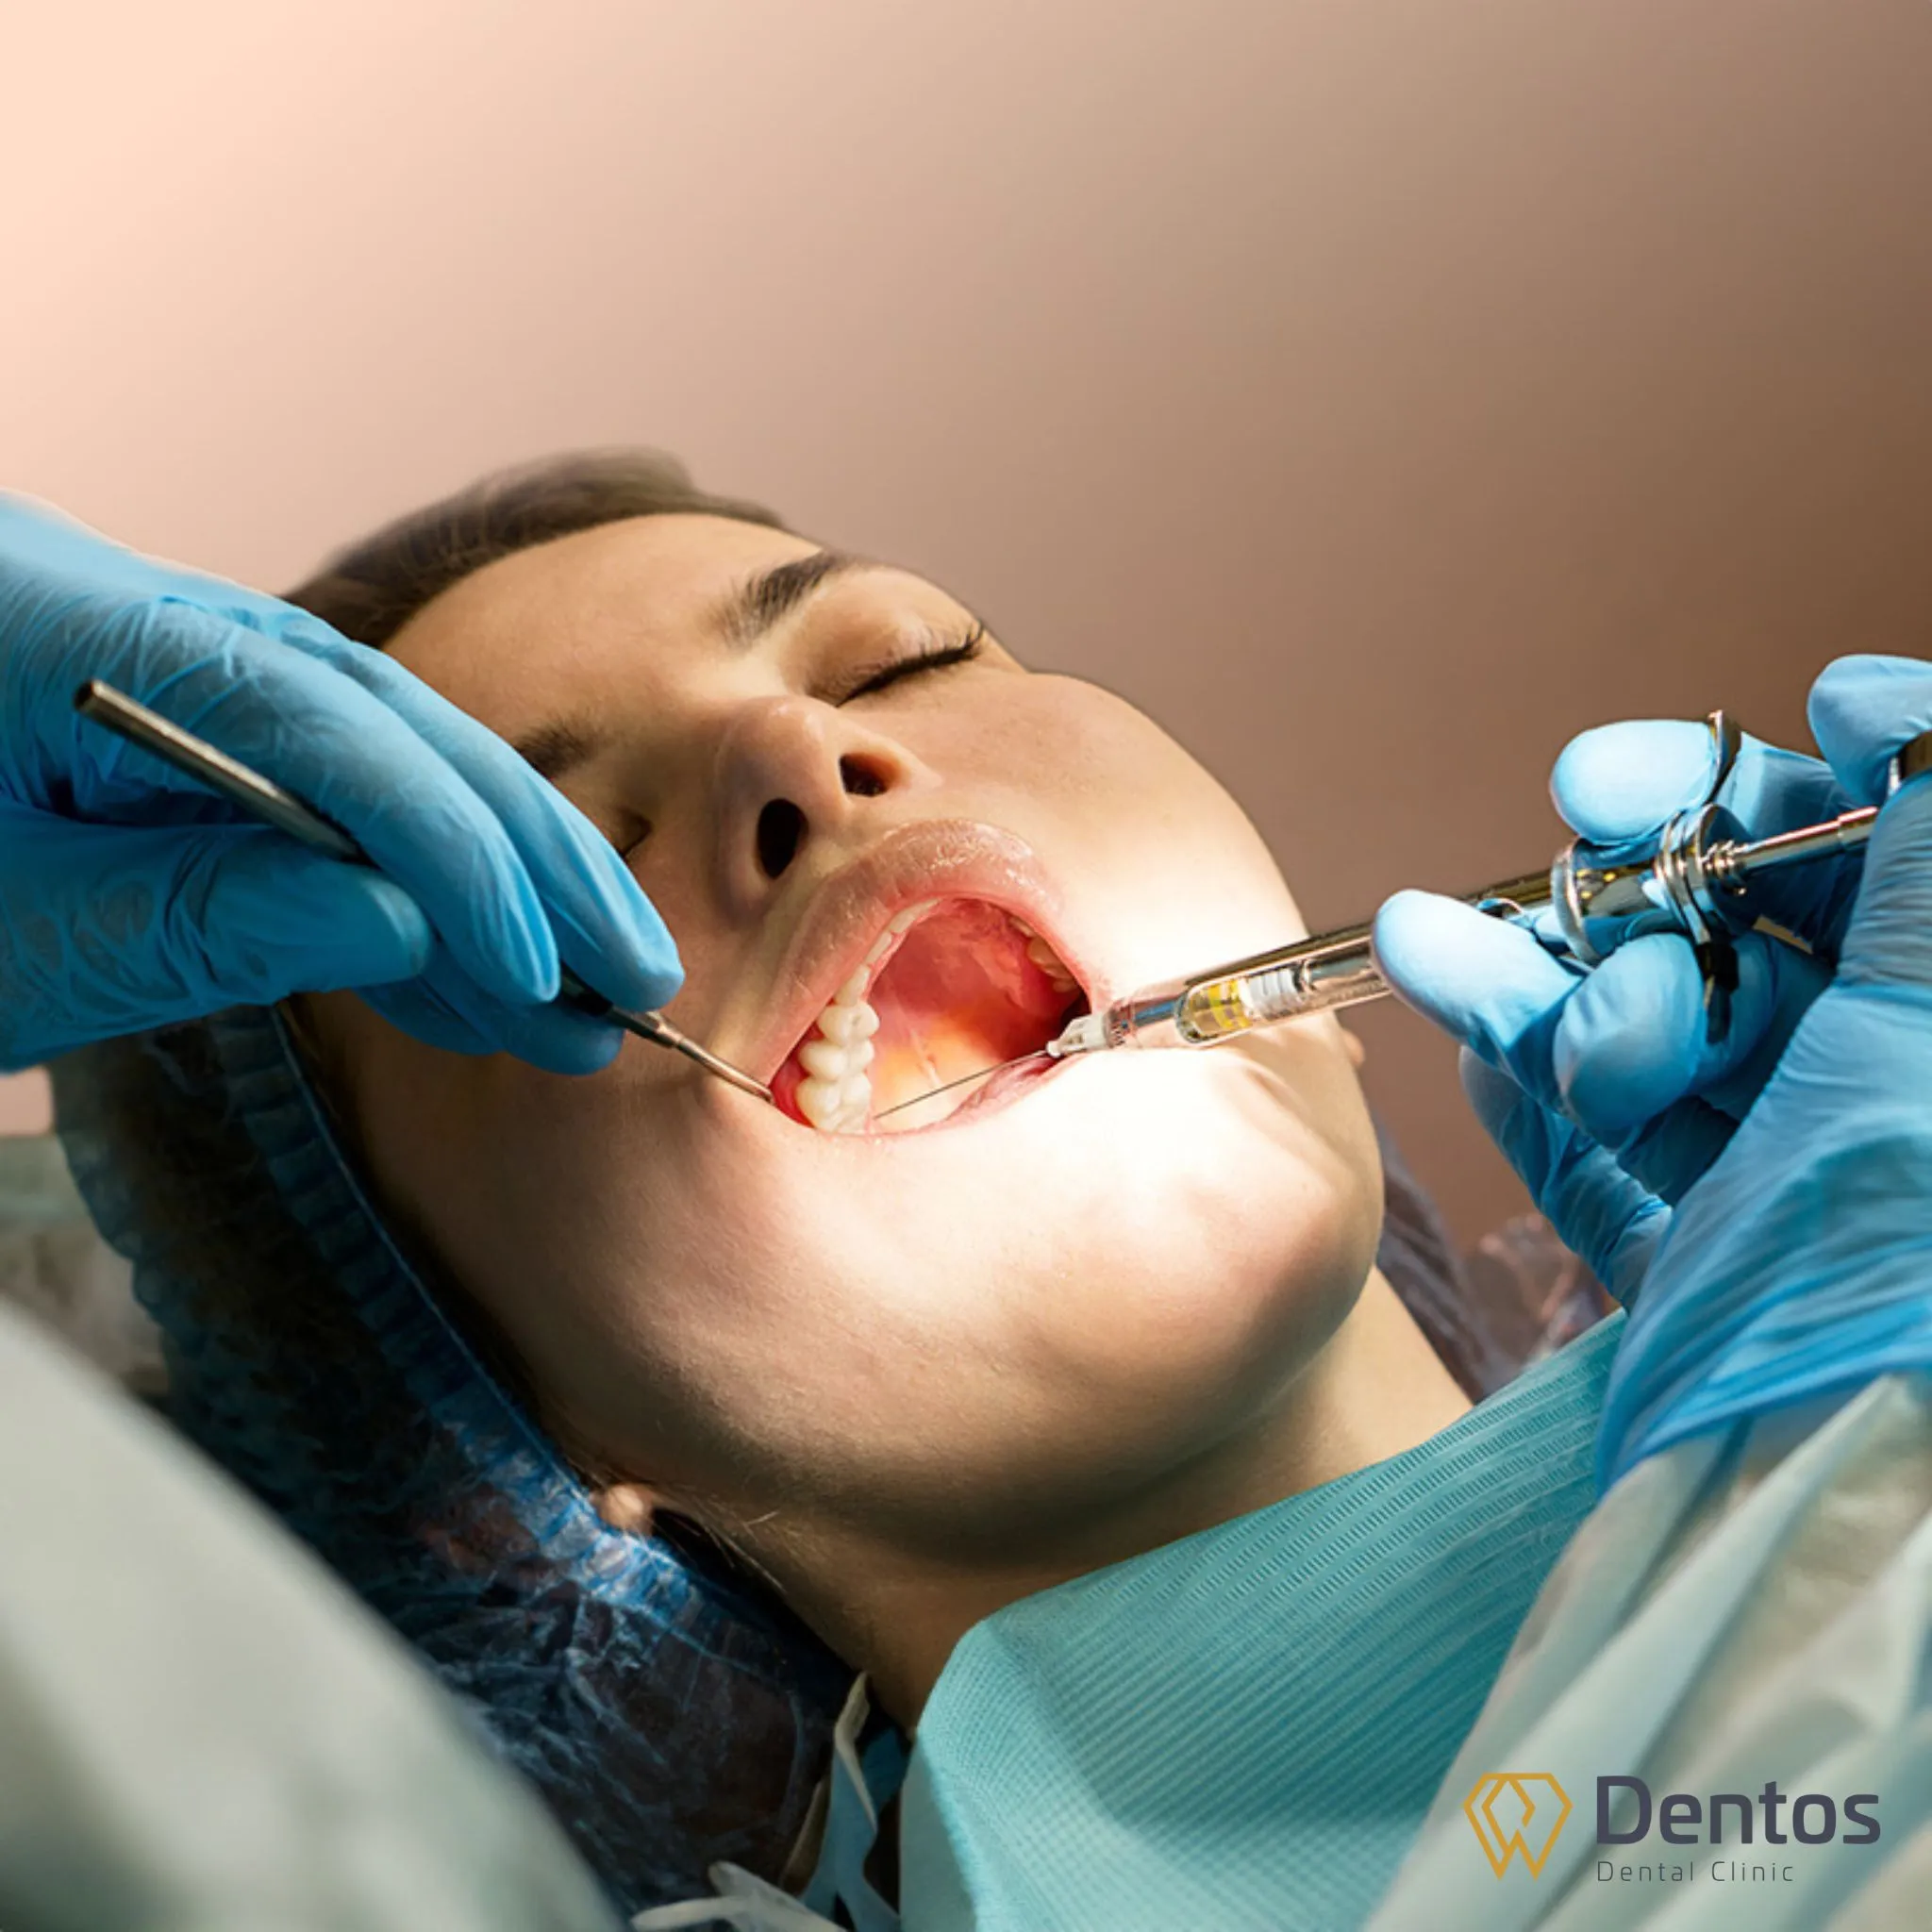 Răng bọc sứ bị đau là điều hiển nhiên nếu răng sâu, viêm tủy mà không được xử lý hoàn toàn